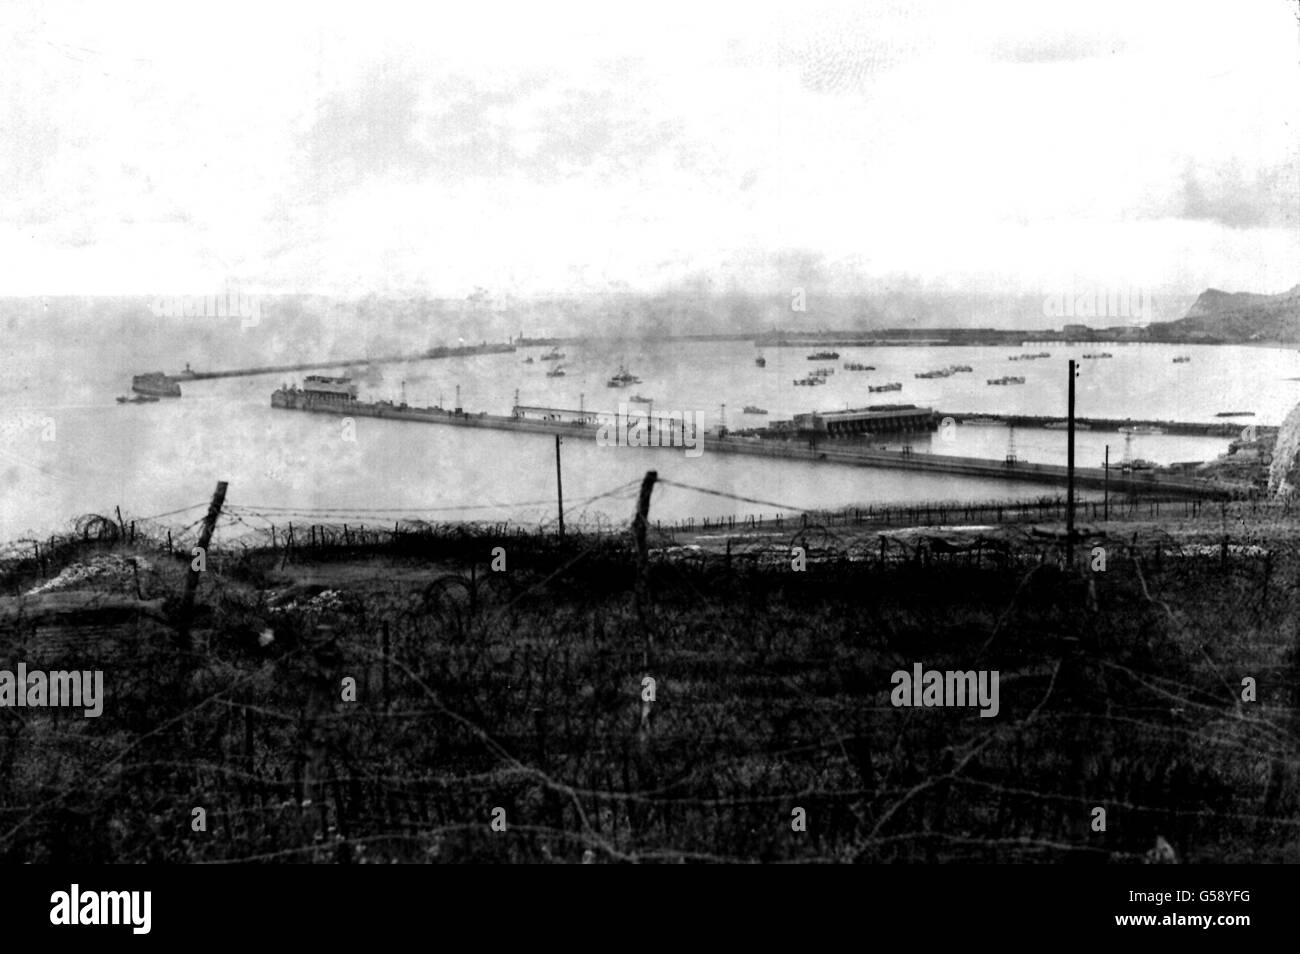 1944 : la fumée traverse le port de Douvres, Kent. Au premier plan se trouvent les ceintures de barbelés utilisées comme partie des défenses côtières britanniques. On peut voir aussi bien des embarcations navales que des embarcations civiles. Photo de la collection PA de la Seconde Guerre mondiale. Banque D'Images